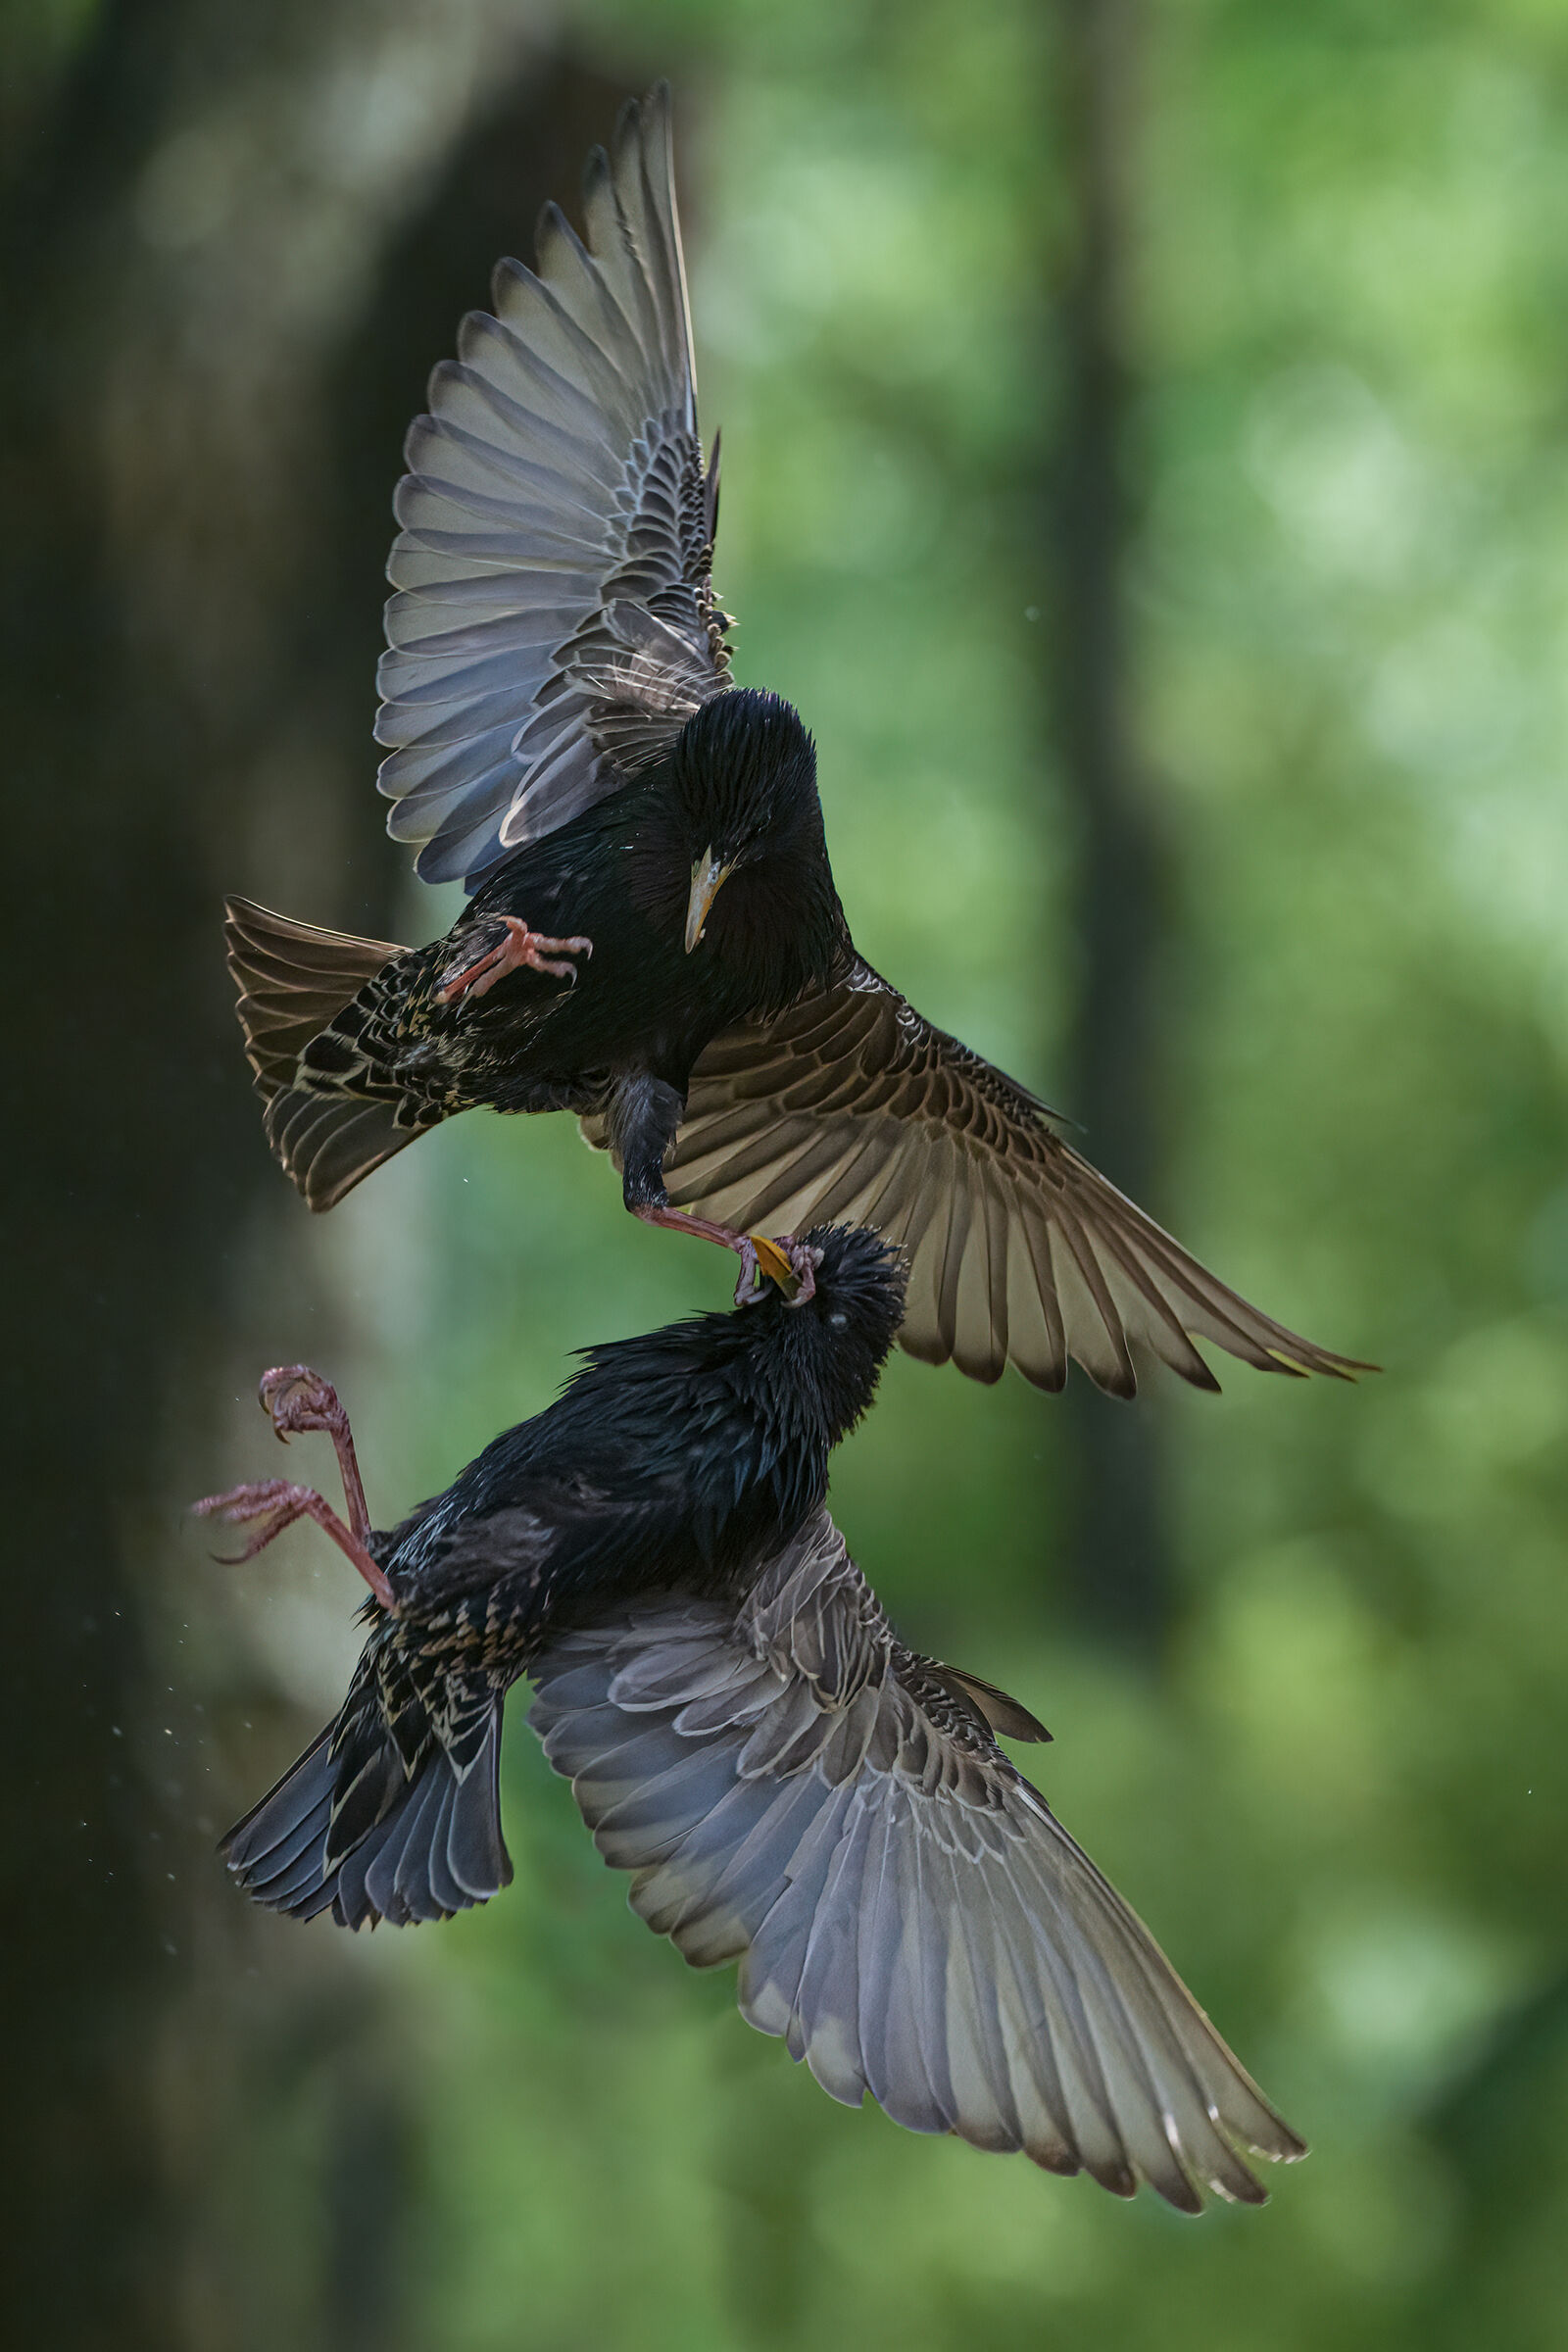 starlings in battle...